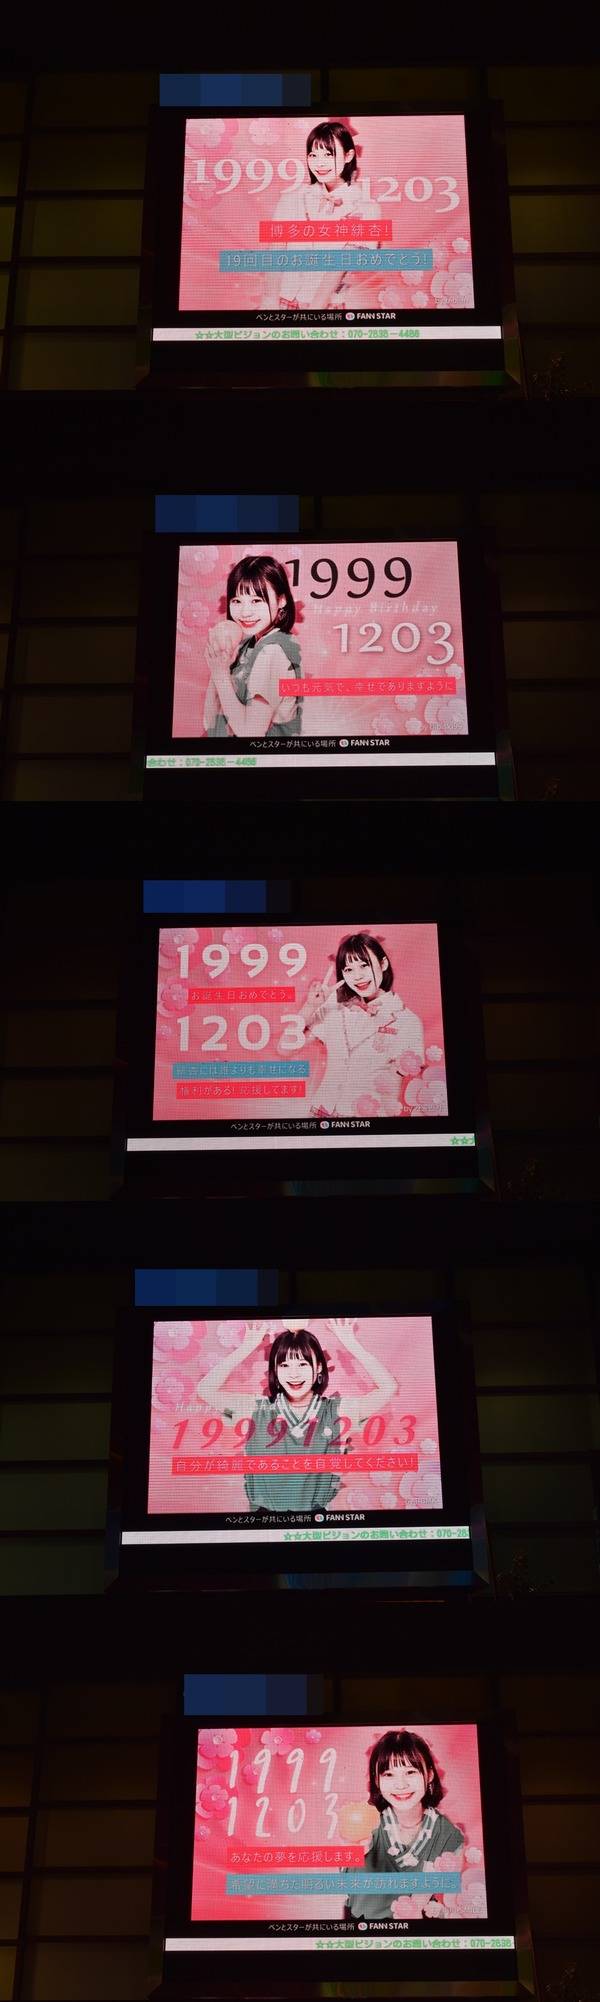 무라카와 비비안, 생일 축하해 3일 일본 도쿄에 위치한 대형 스크린에서 생일 축하 영상이 상영 중이다. /팬앤스타